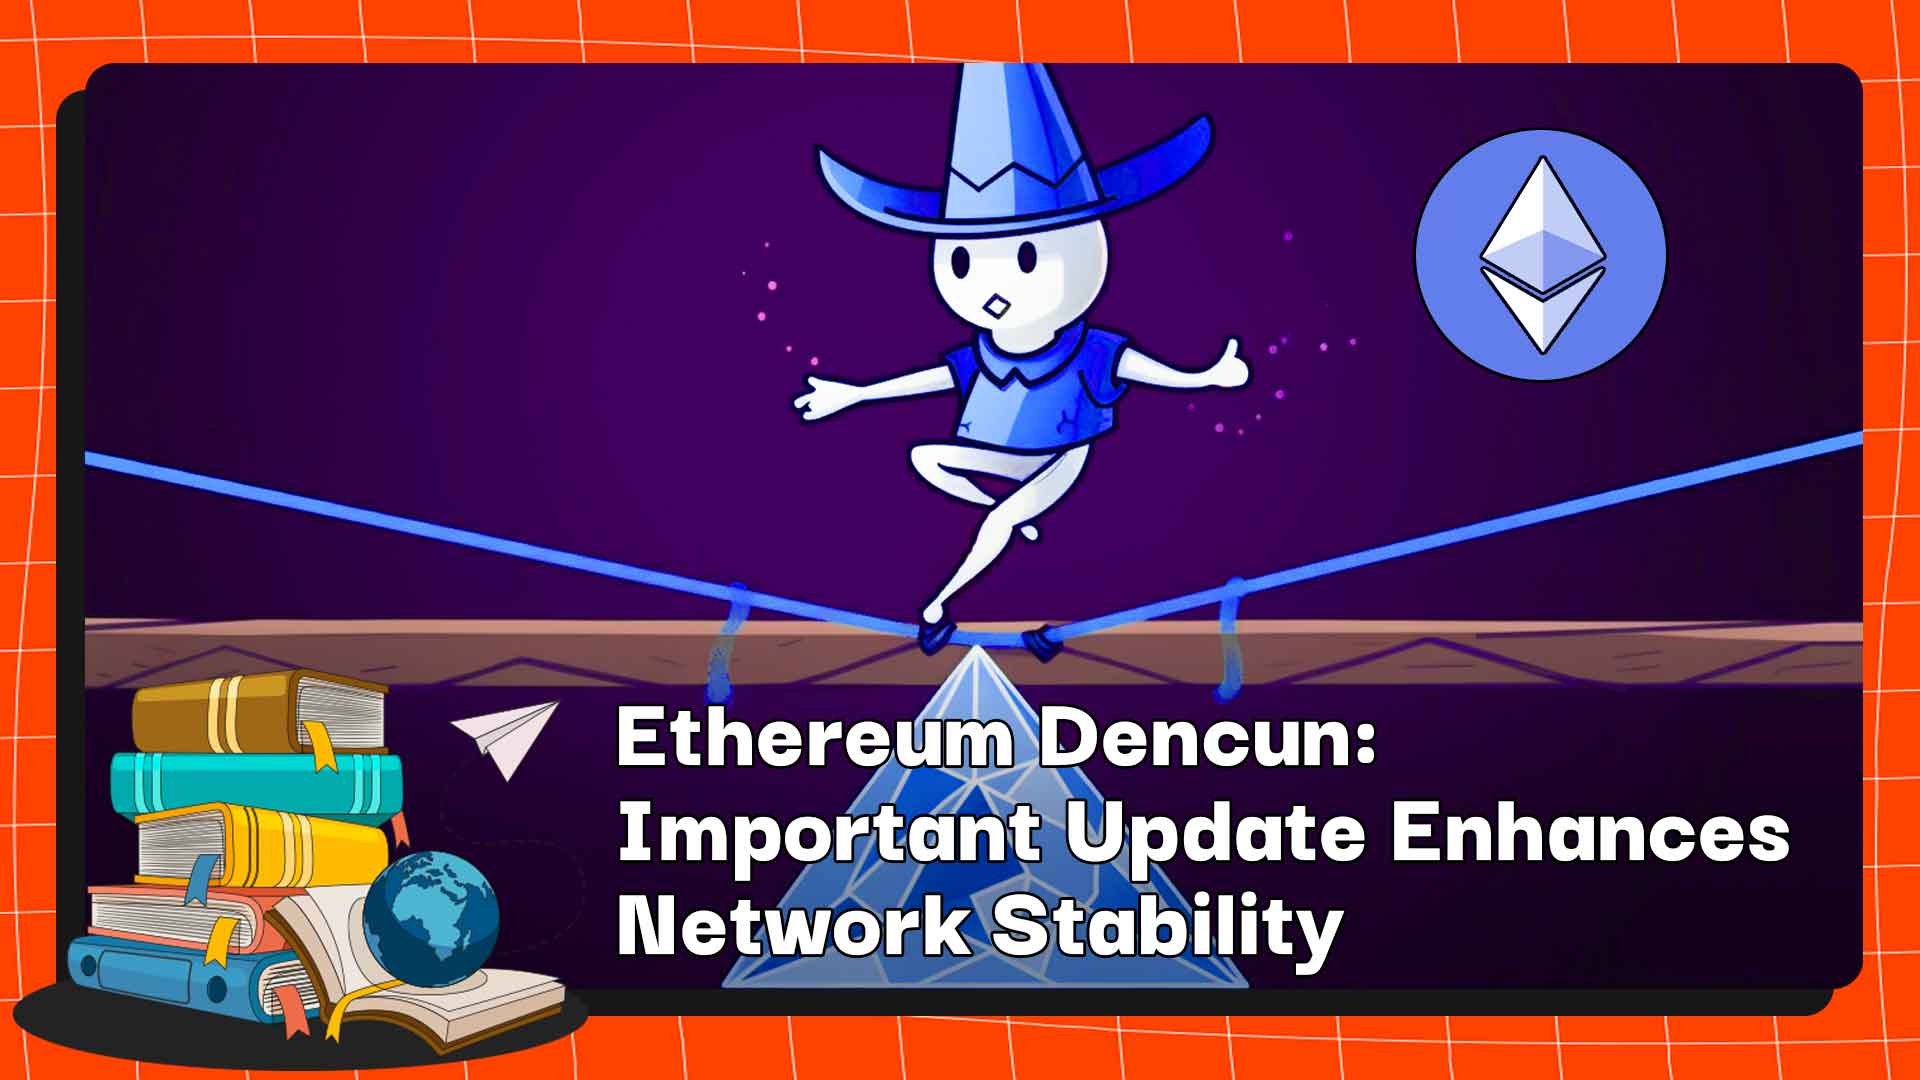 एथेरियम डेनकुन: महत्वपूर्ण अपडेट नेटवर्क स्थिरता को बढ़ाता है